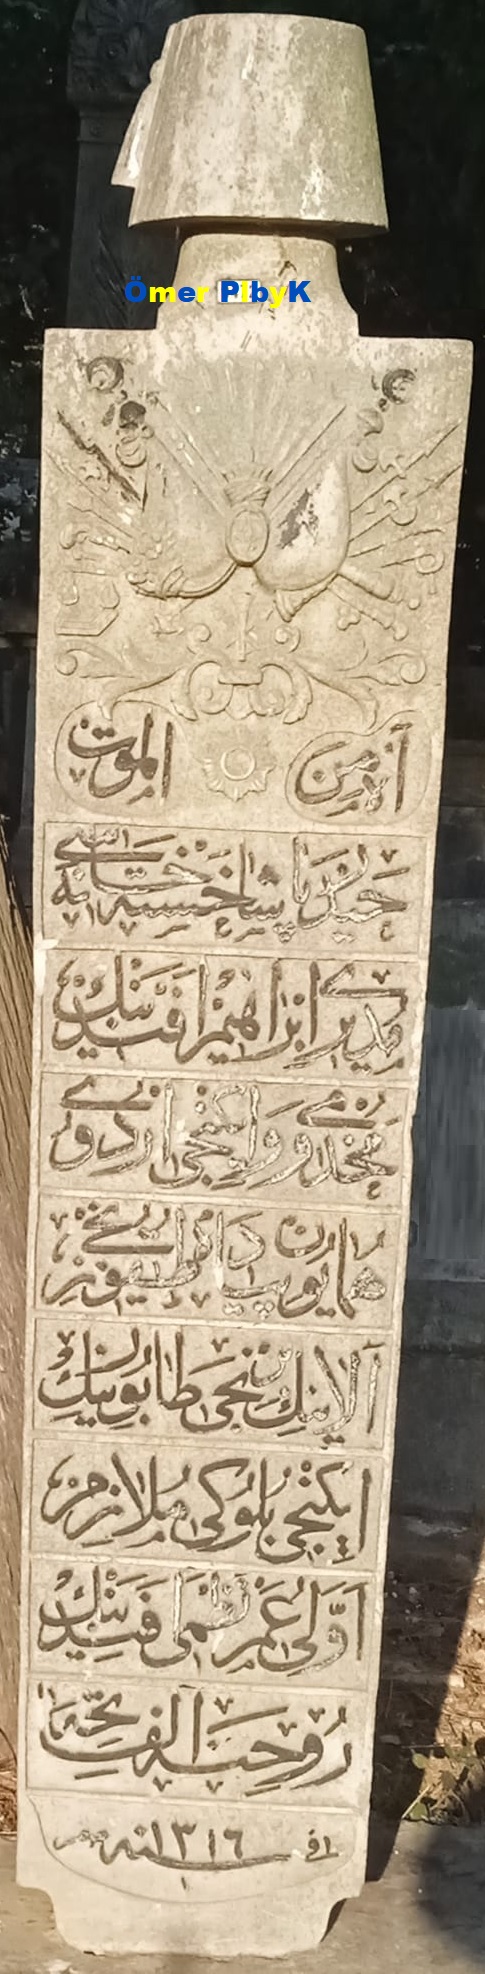 Ömer Nazmi Efendi'nin Osmanlı mezar taşı